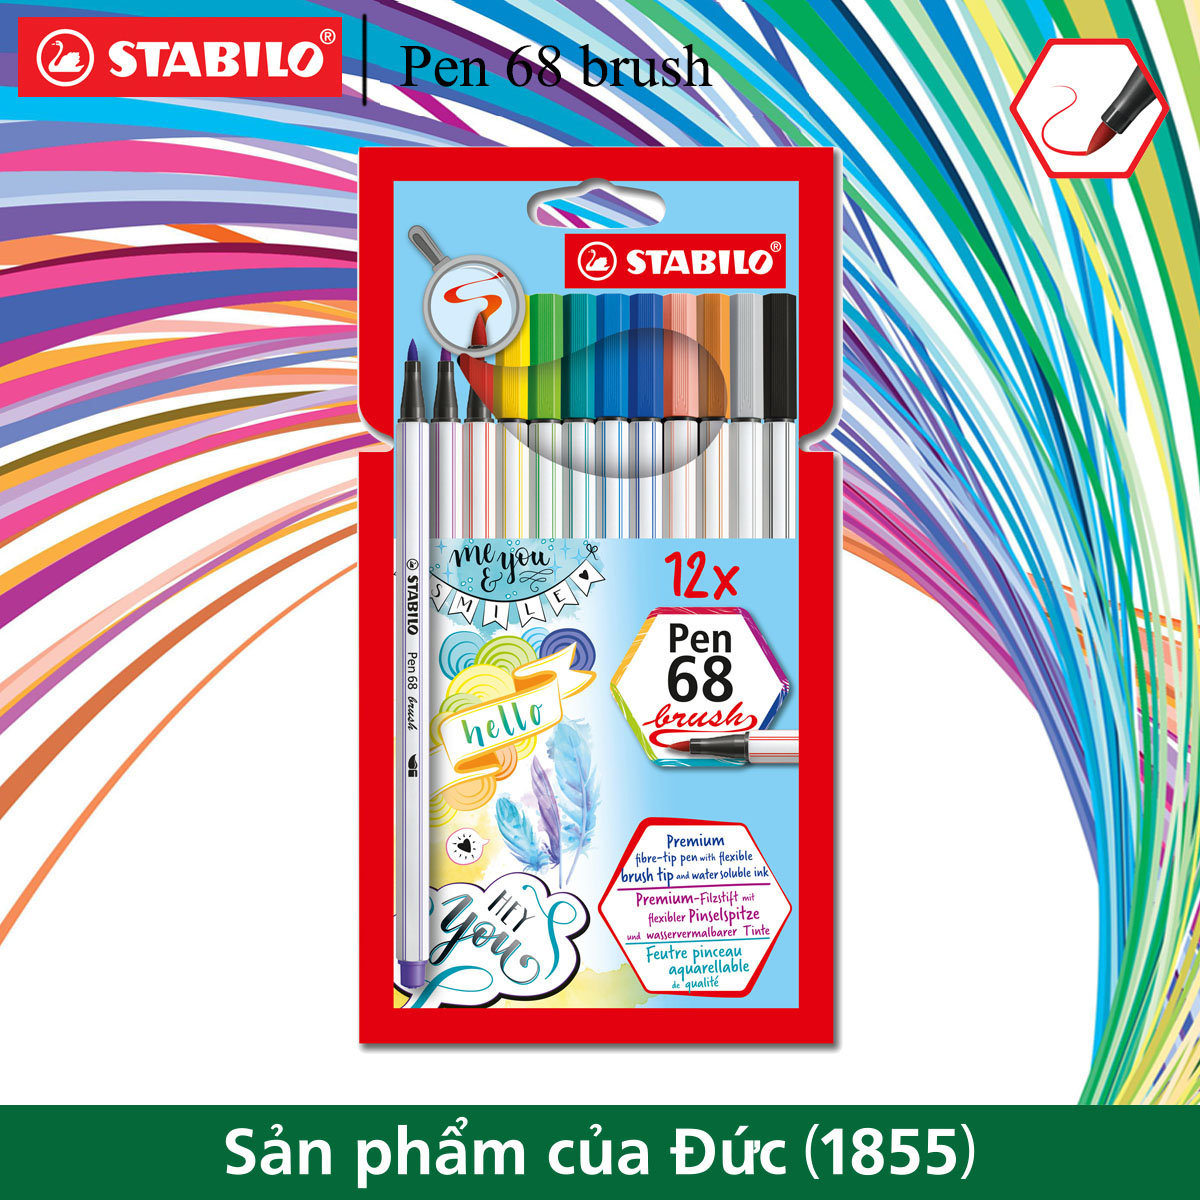 Bộ 12 bút lông màu STABILO Pen 68 brush